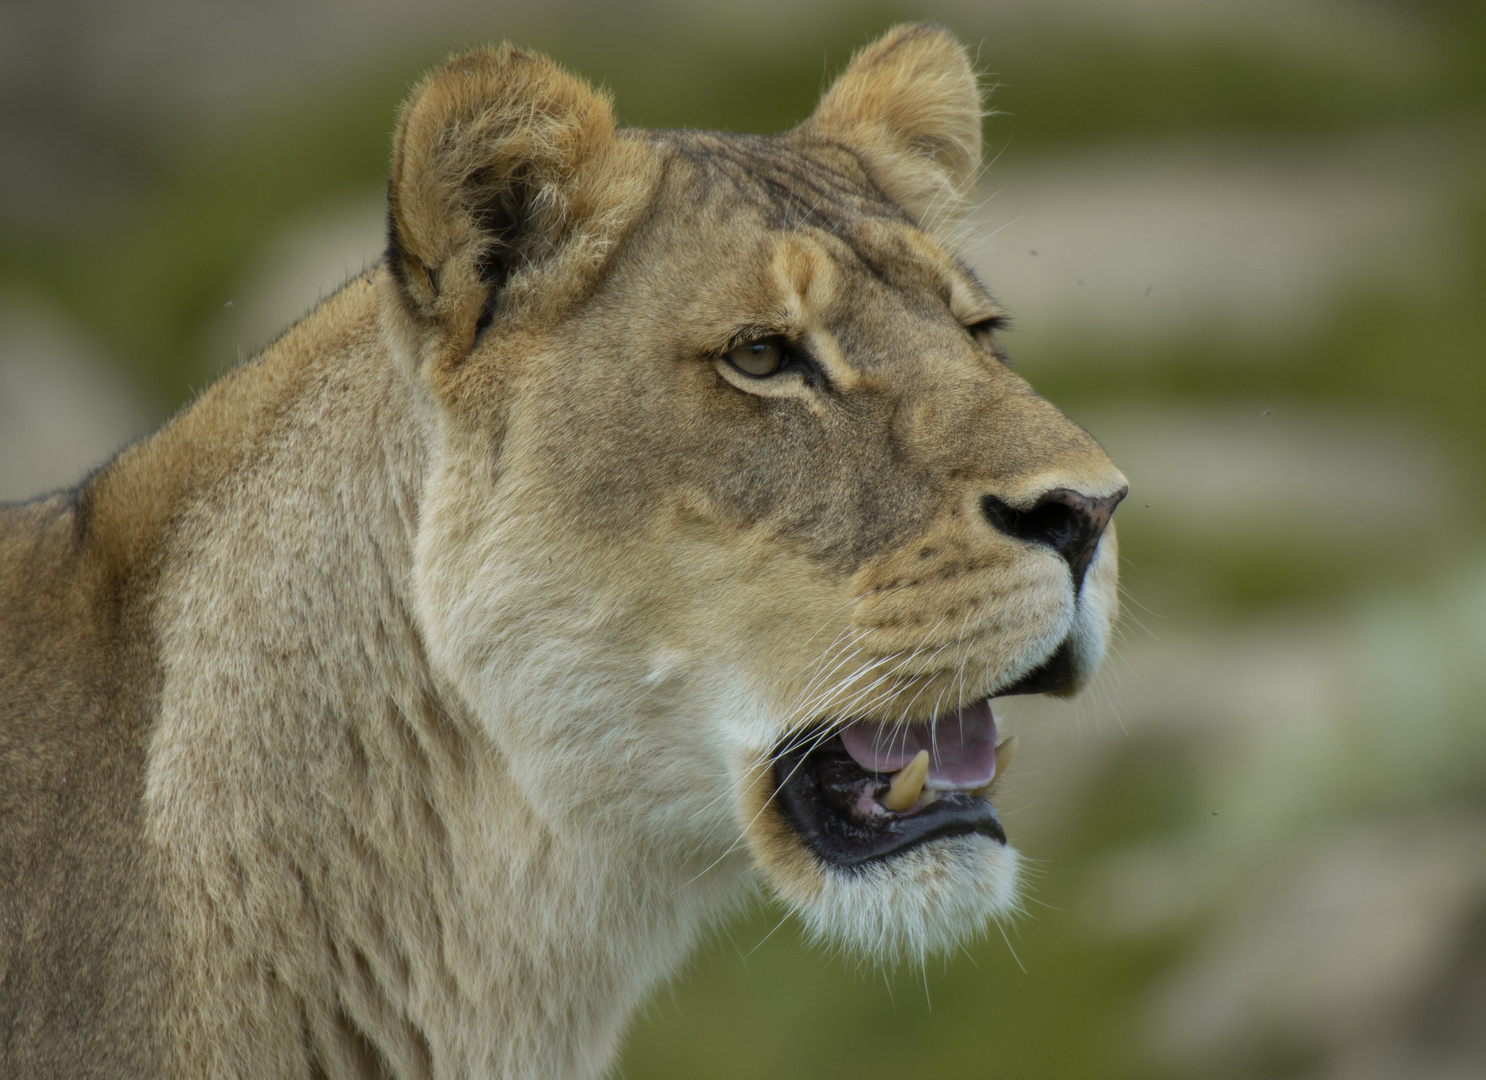 Attentive 2 (Panthera leo, lion d'Afrique)